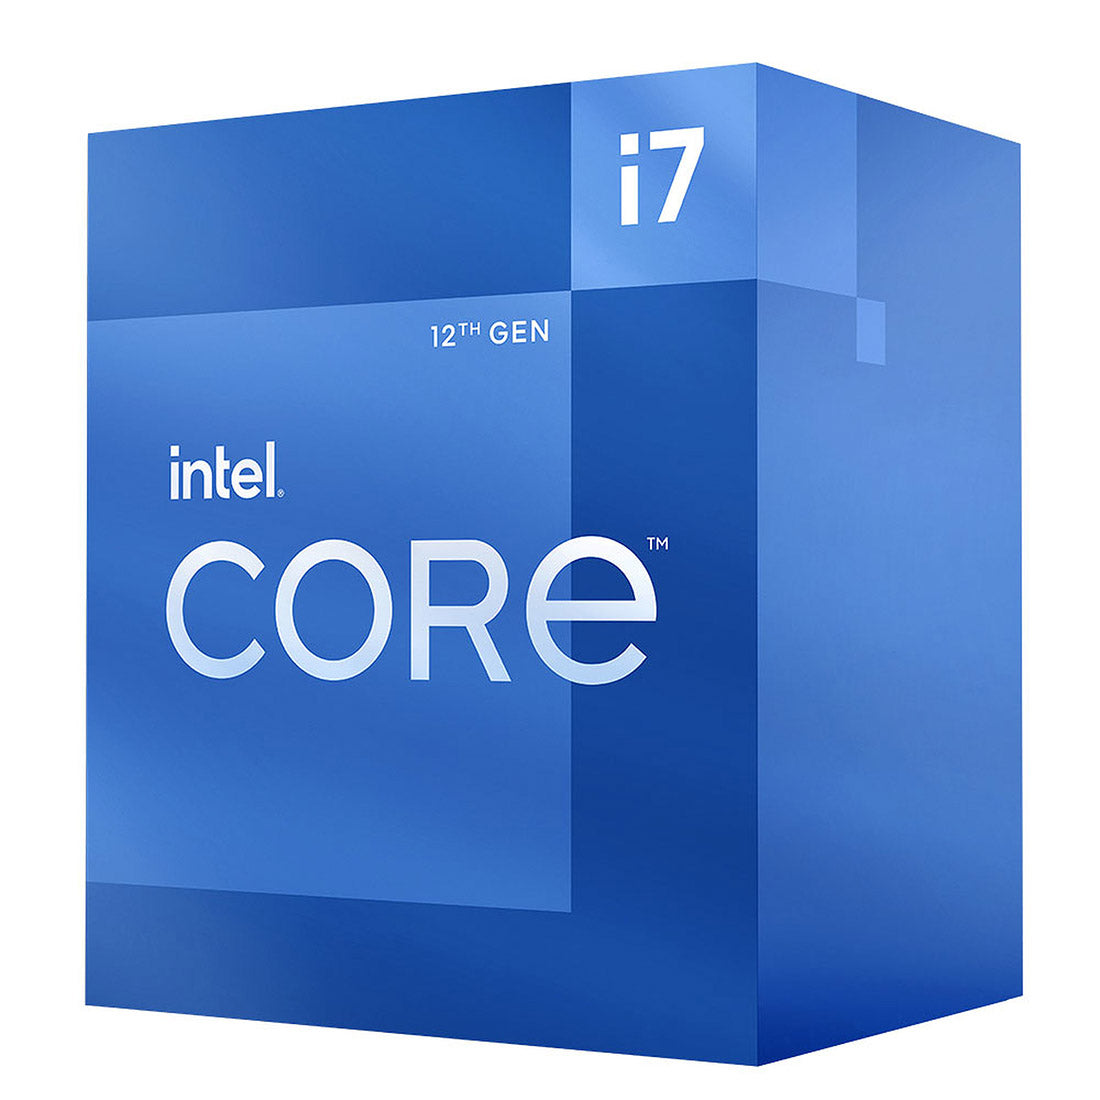 Intel Core 12th Gen i7-12700 LGA1700 Desktop Processor 12 Cores up to 4.9GHz 25MB Cache